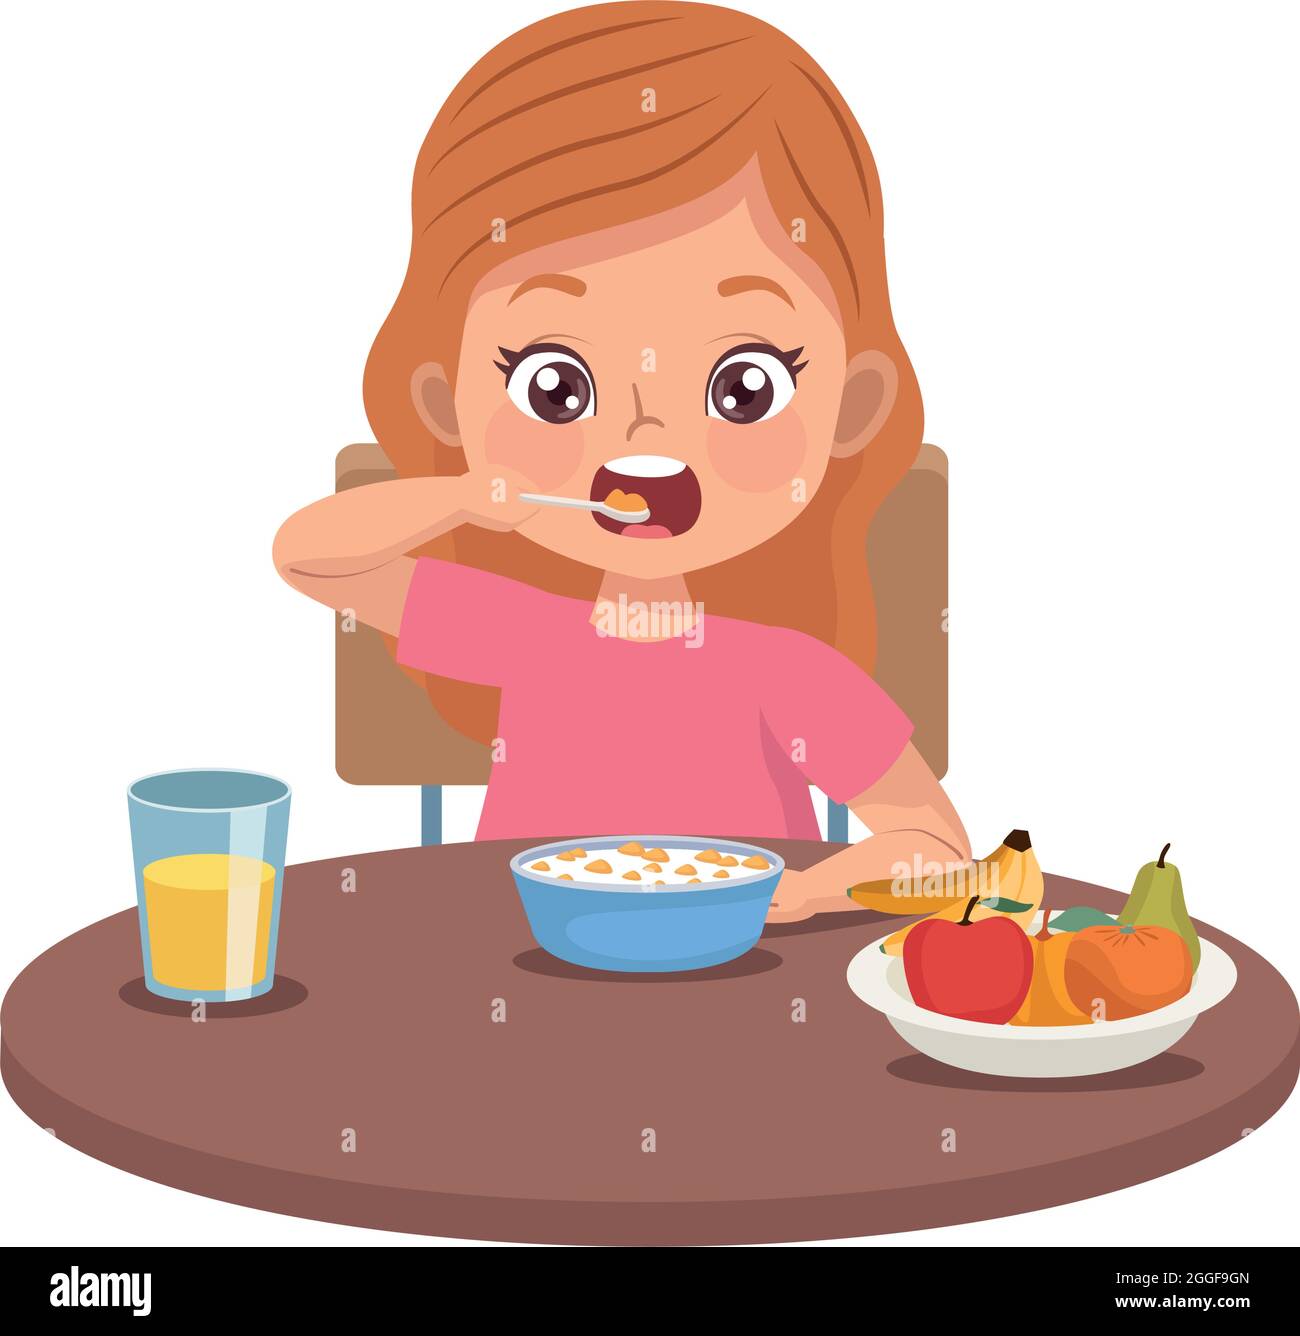 little girl eating breakfast Stock Vector Image & Art - Alamy